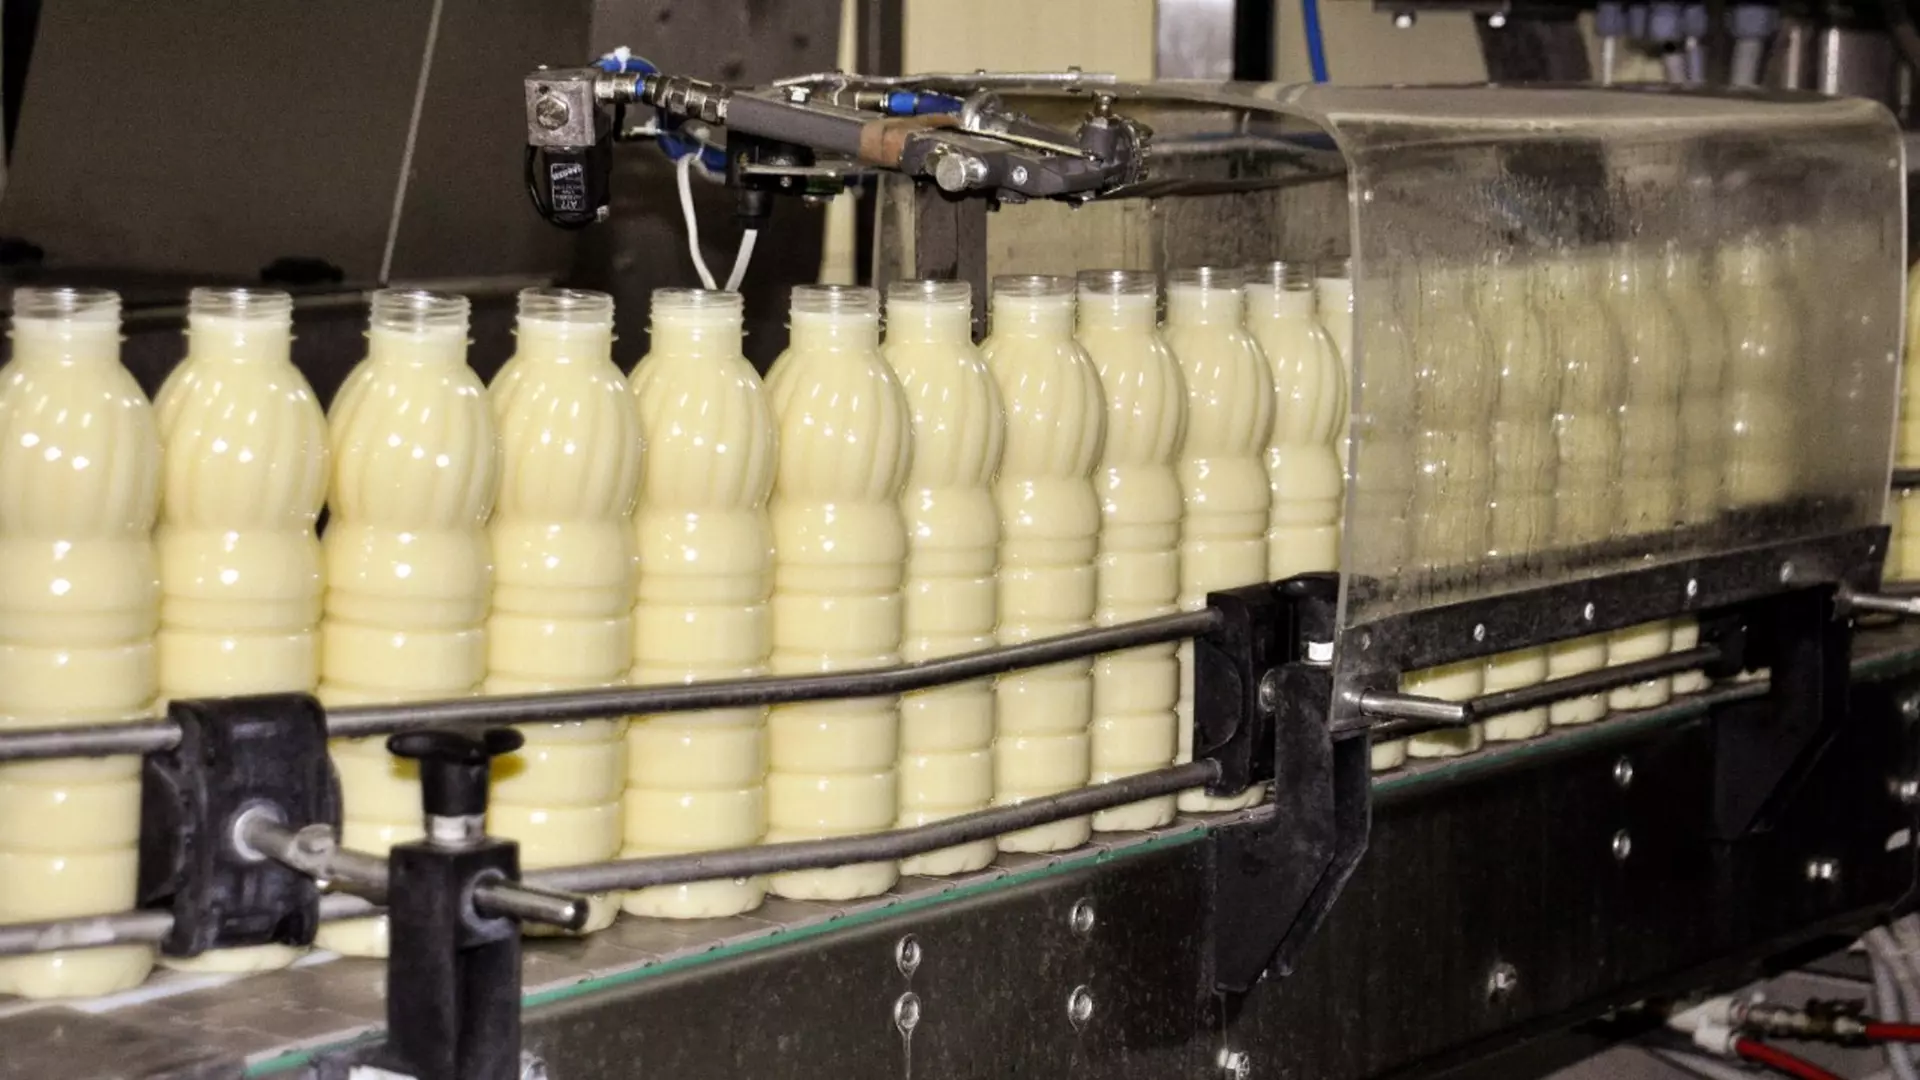 Завод в ХМАО указал неверный срок годности молока